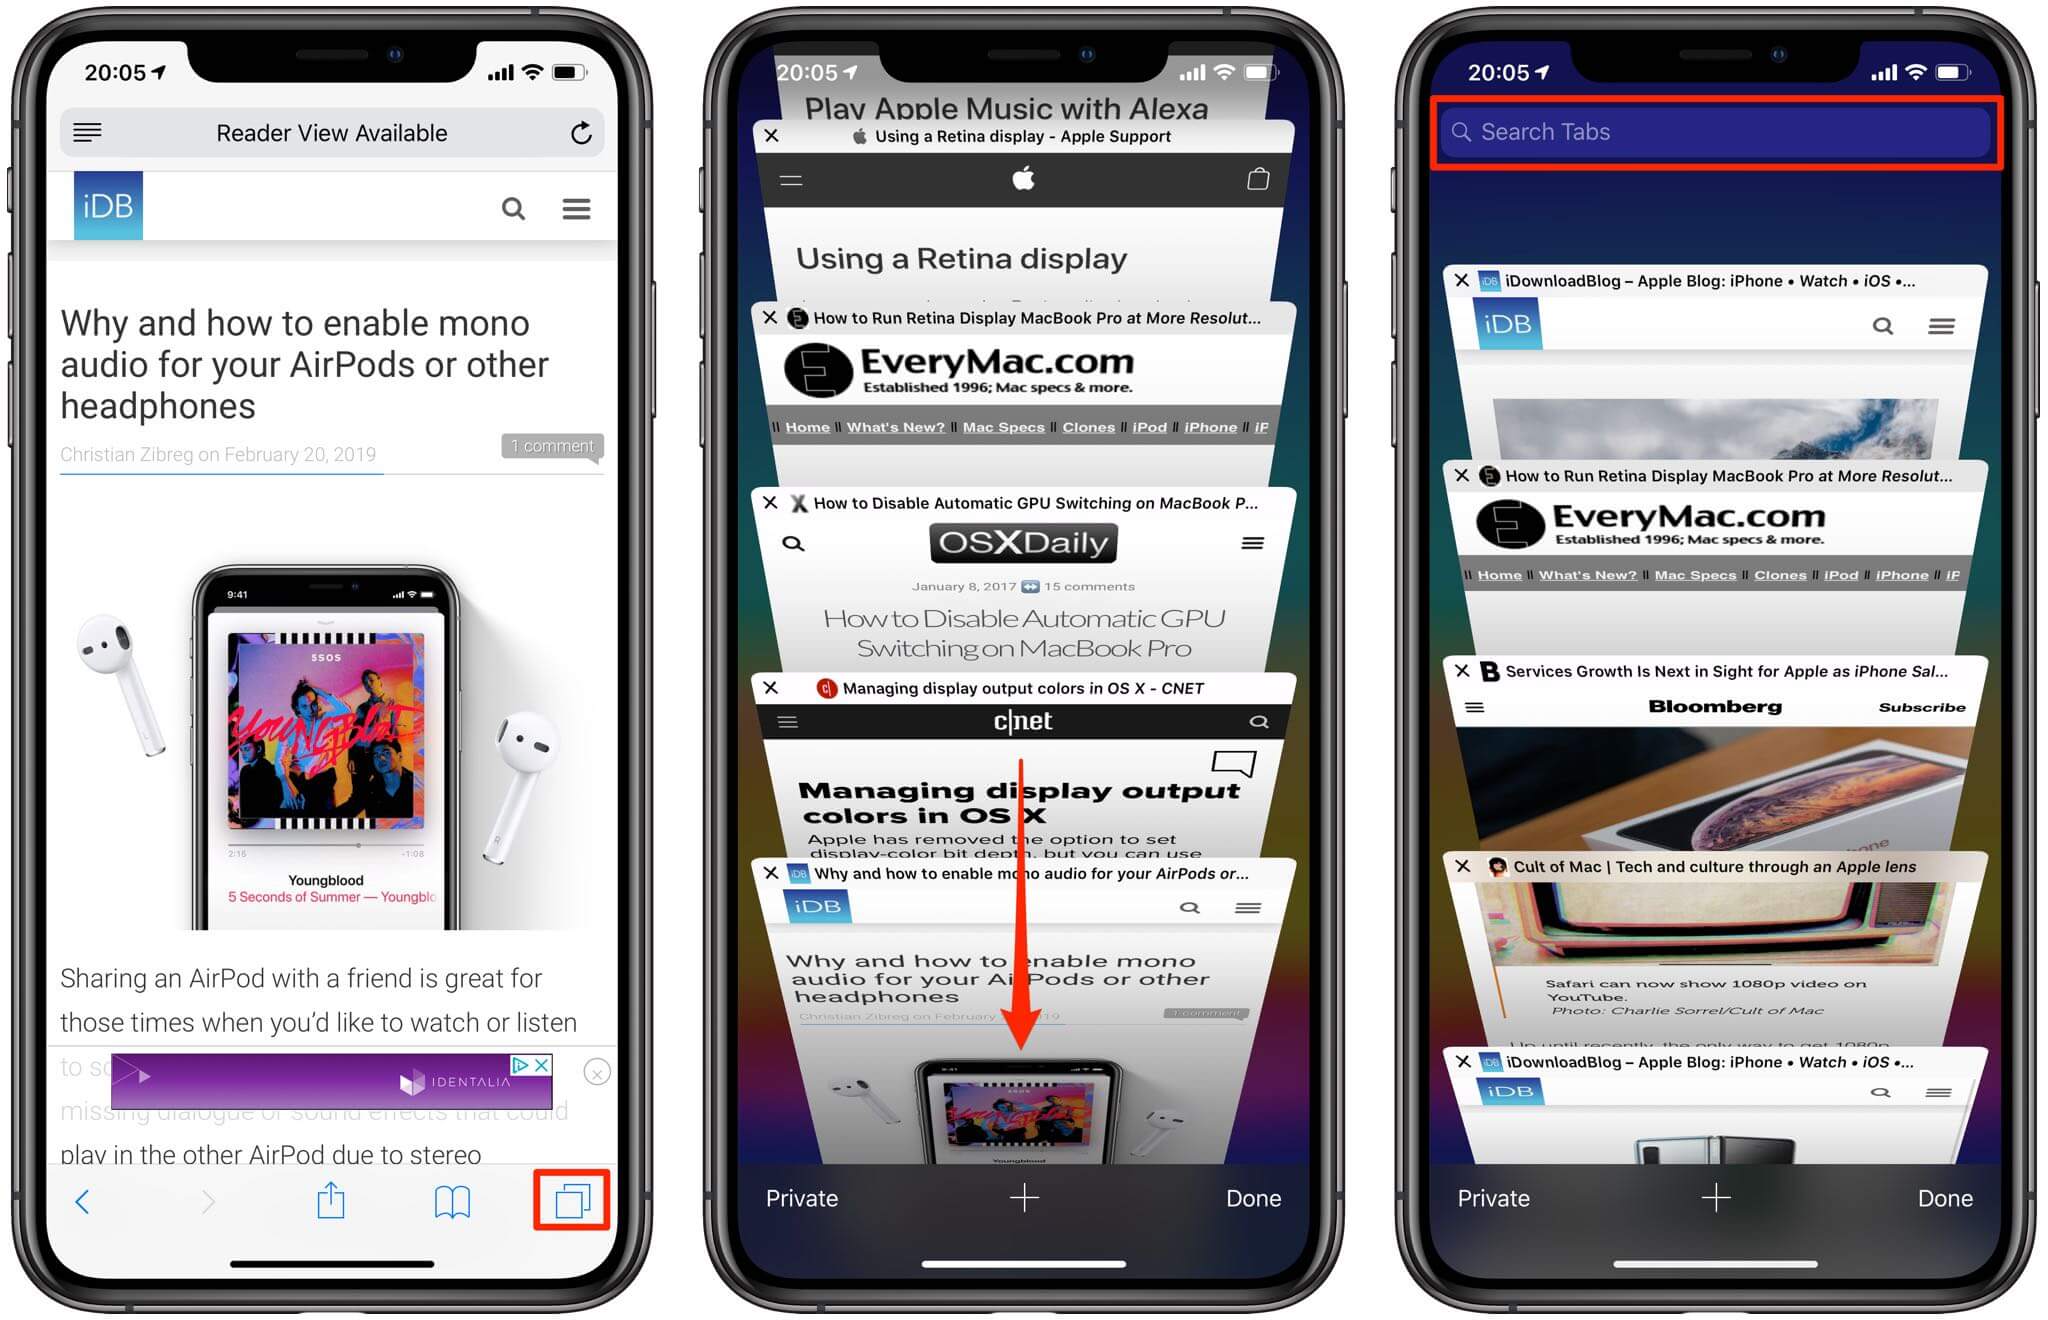 Search Tabs in Safari on iPhone and iPad